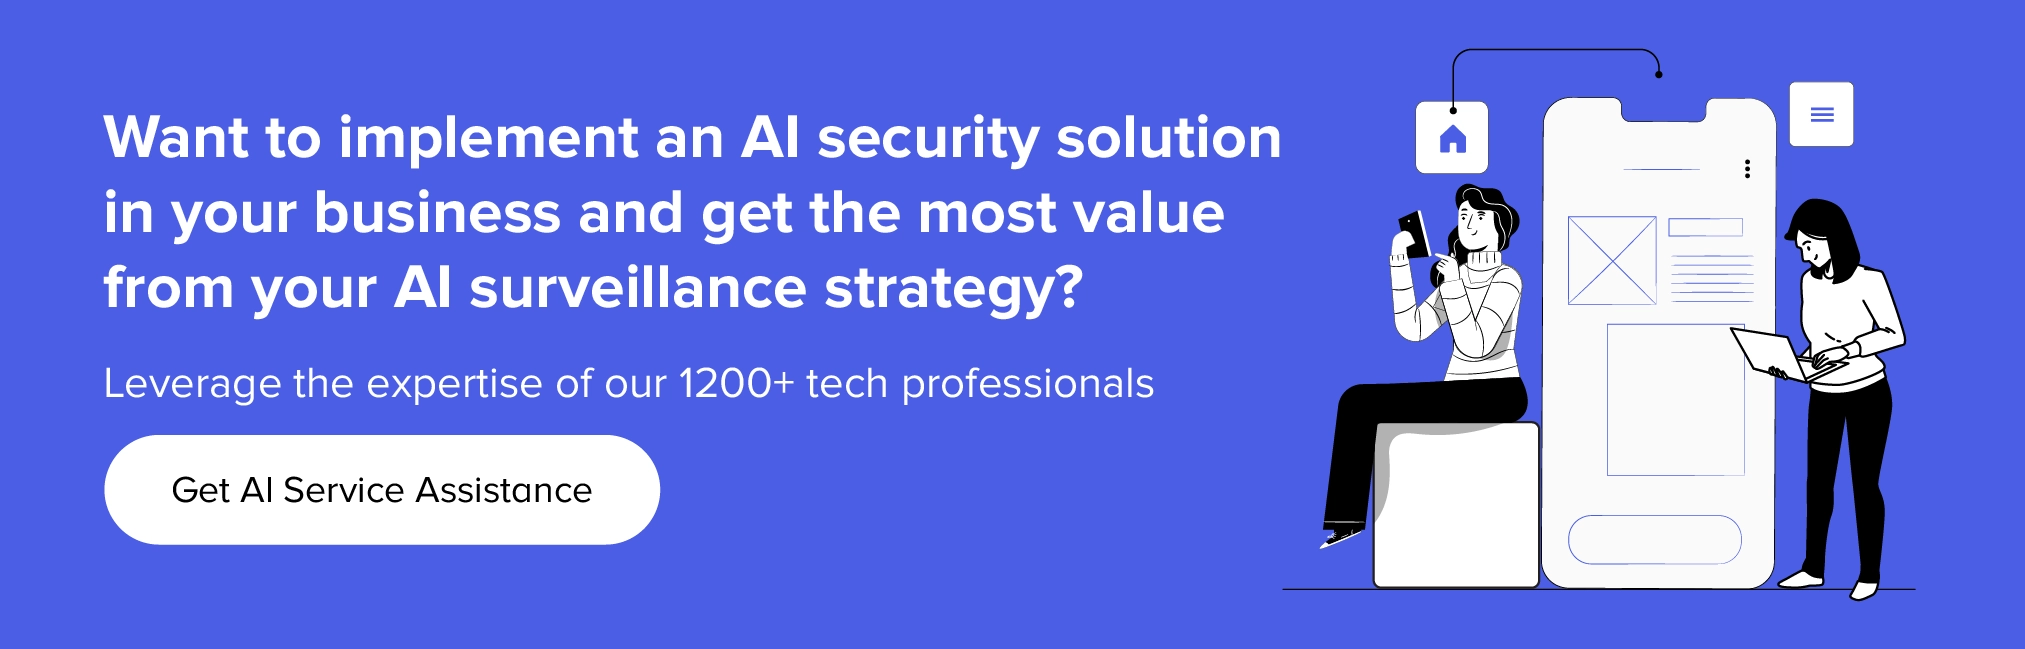 Skontaktuj się z nami, aby wdrożyć rozwiązania bezpieczeństwa AI w Twojej firmie